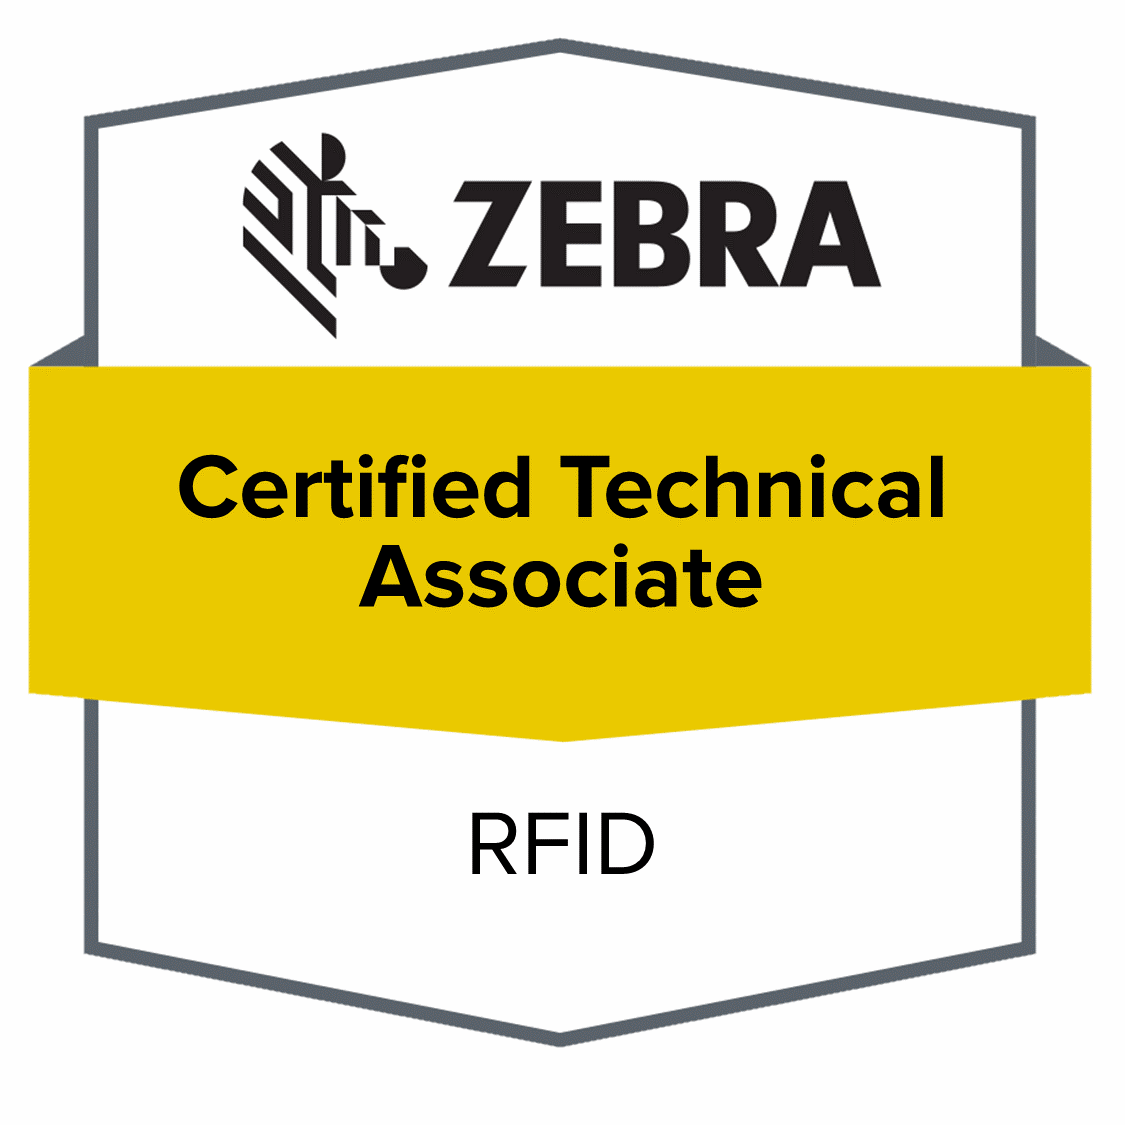 ZEBRA RFID certified logo